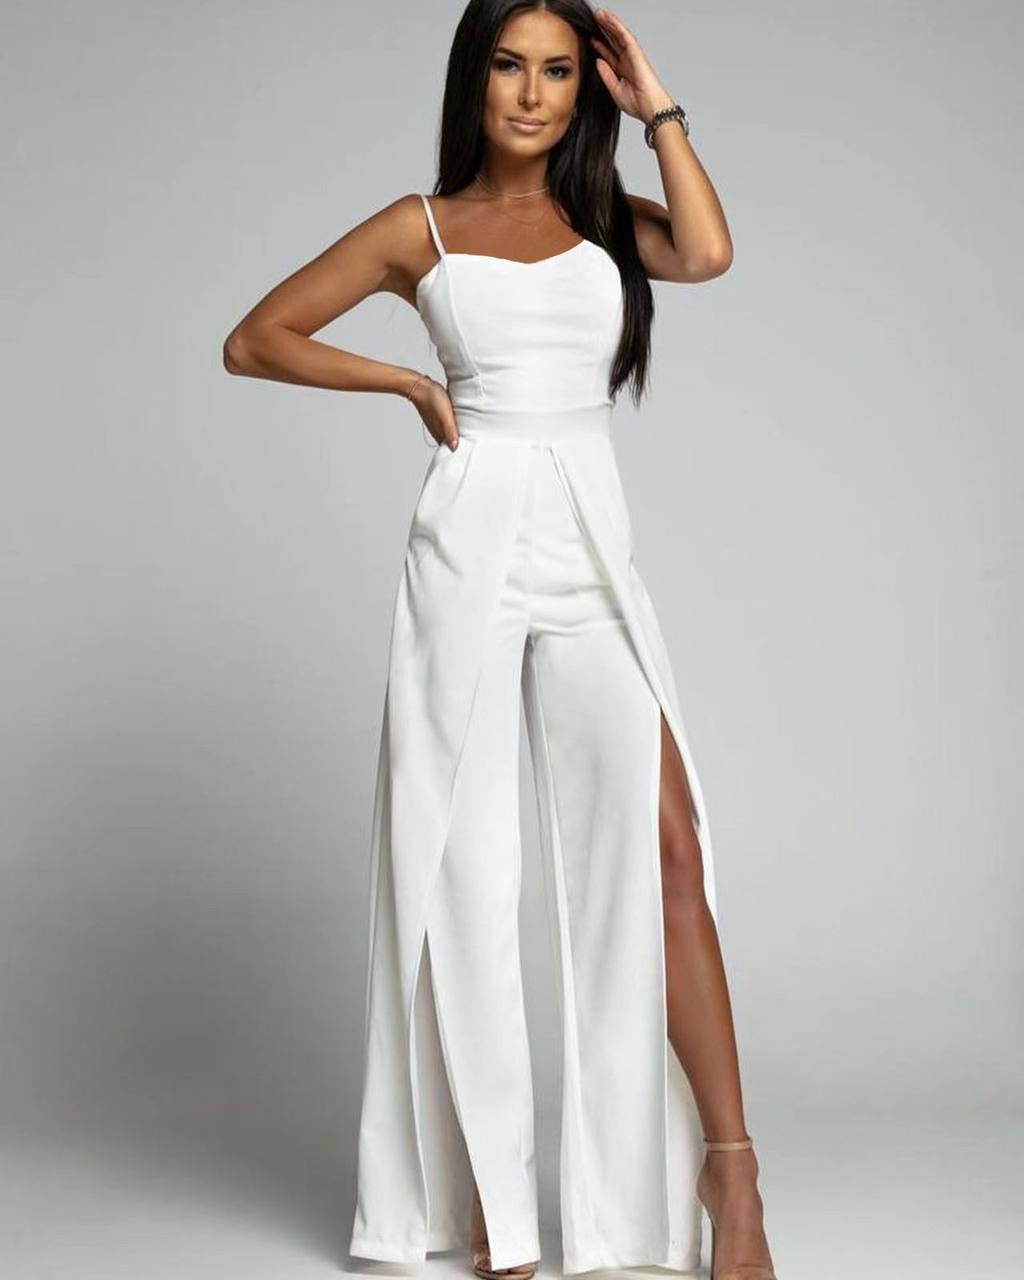 Γυναικείο φόρεμα με σκίσιμο 4845 άσπρο